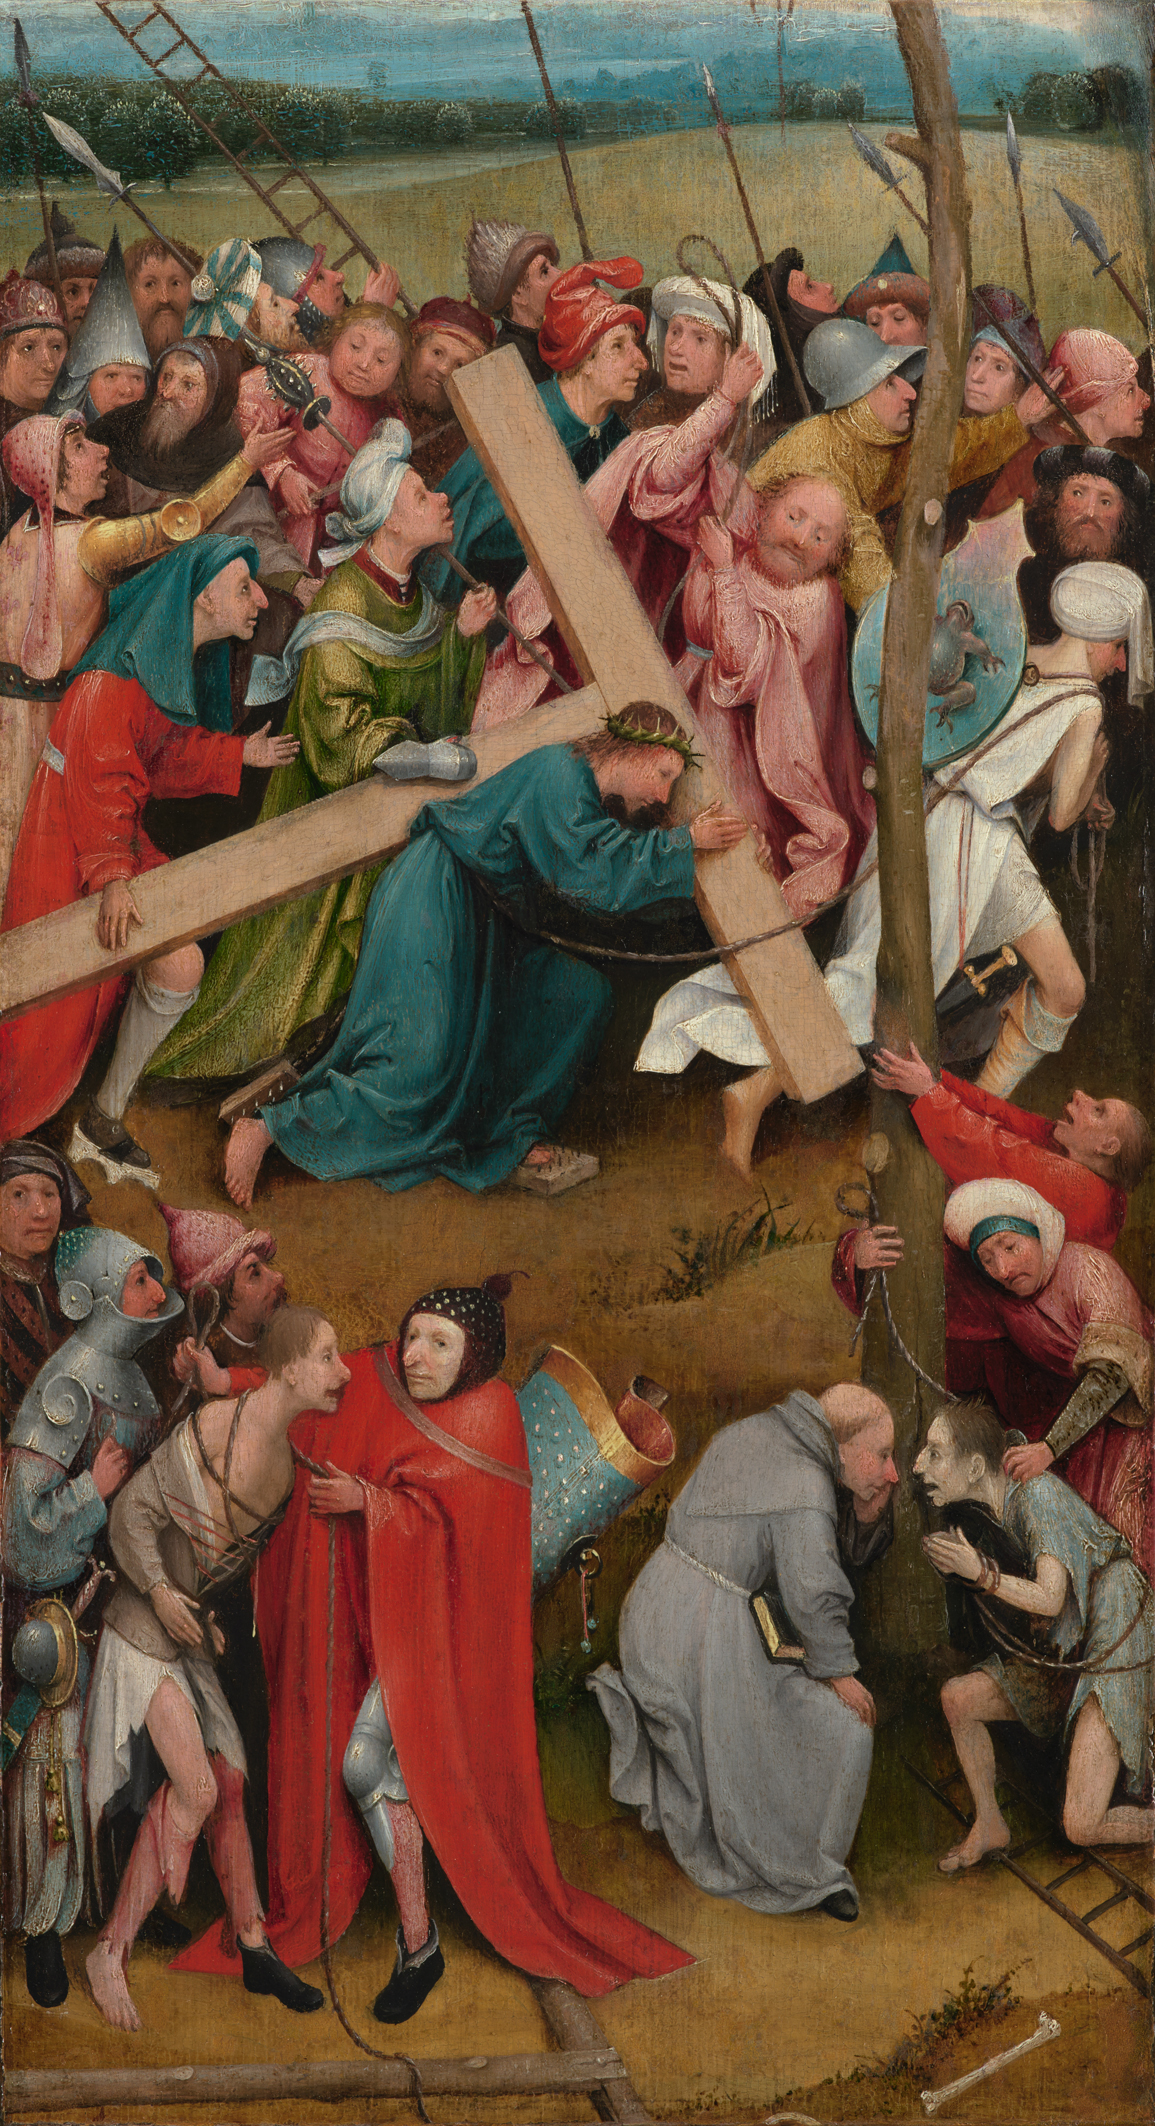 Hristos purtând crucea by Hieronymus Bosch - 1480/90 - 57 cm × 32 cm 